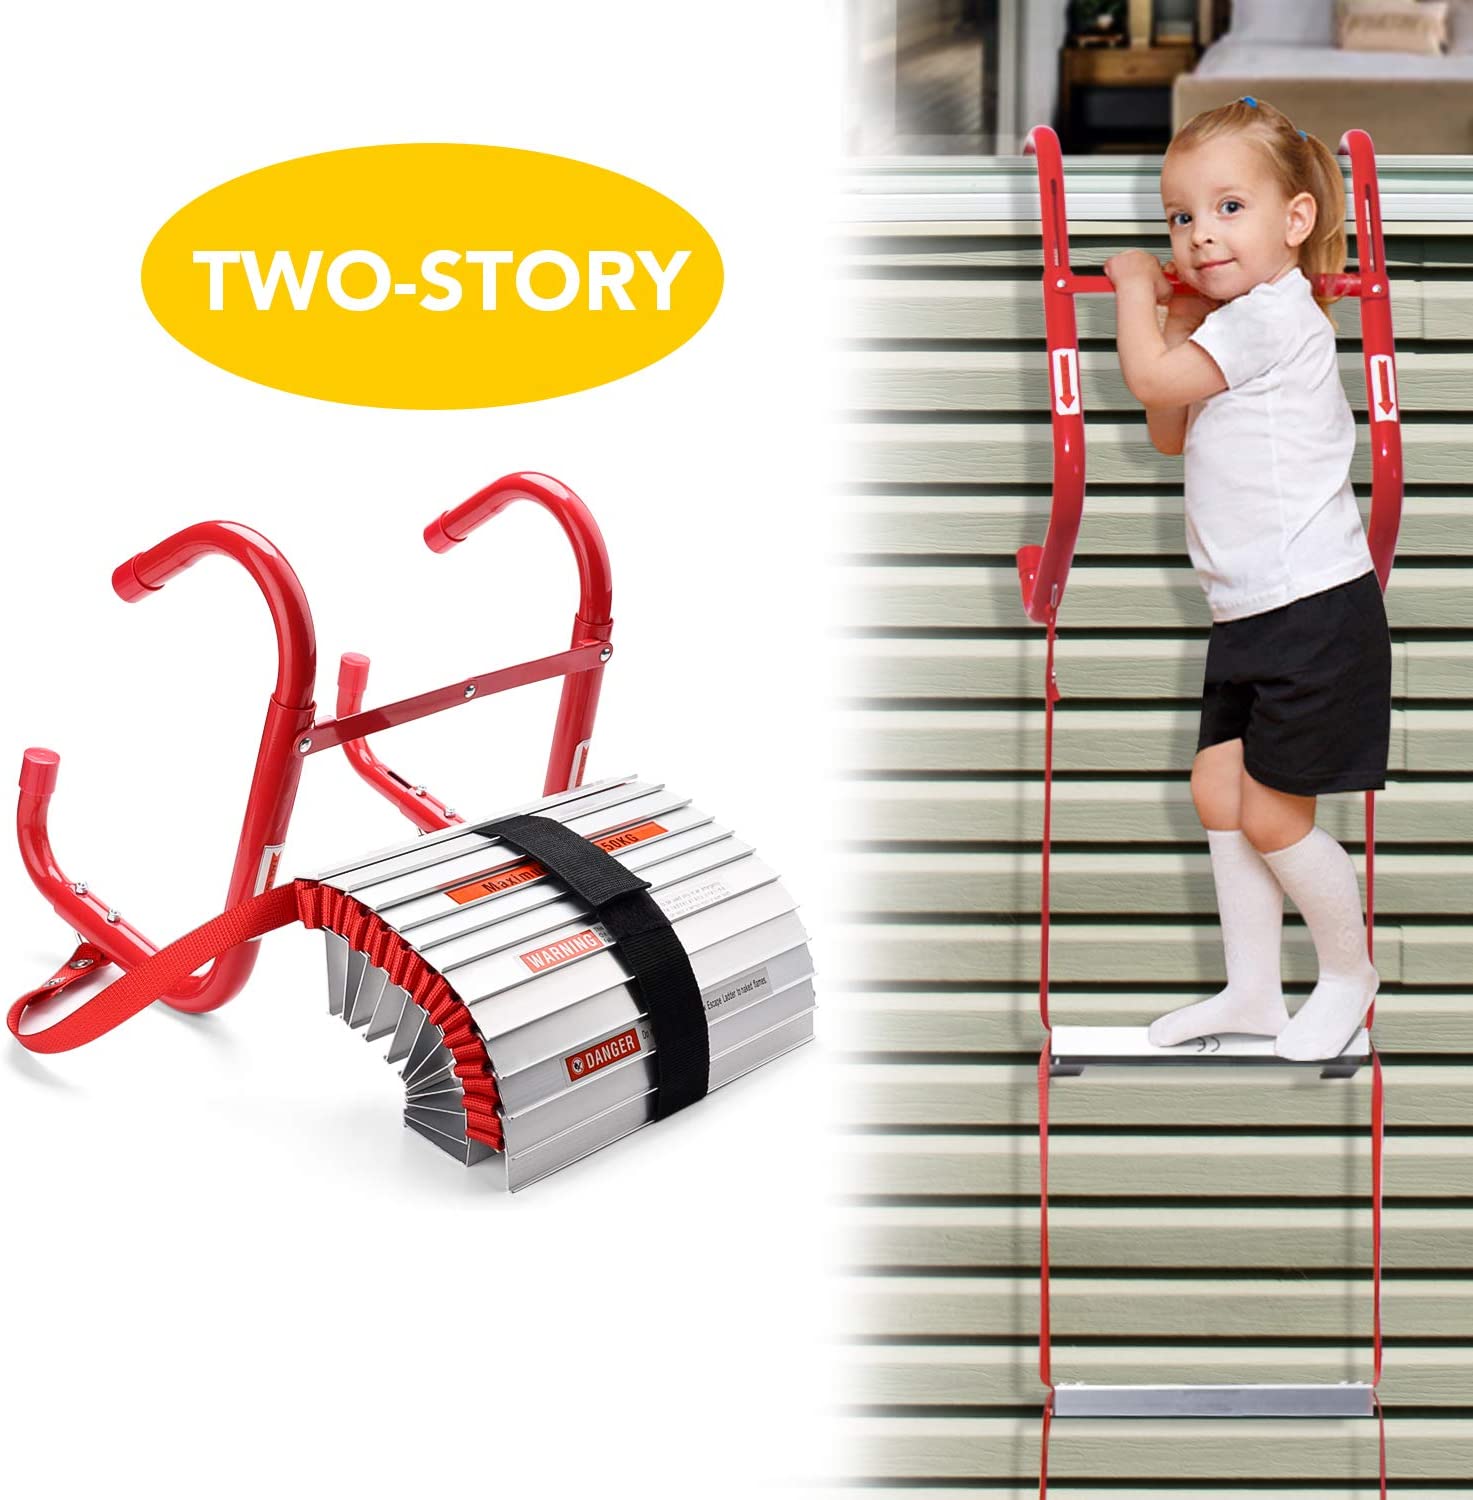 Portable fire escape ladder